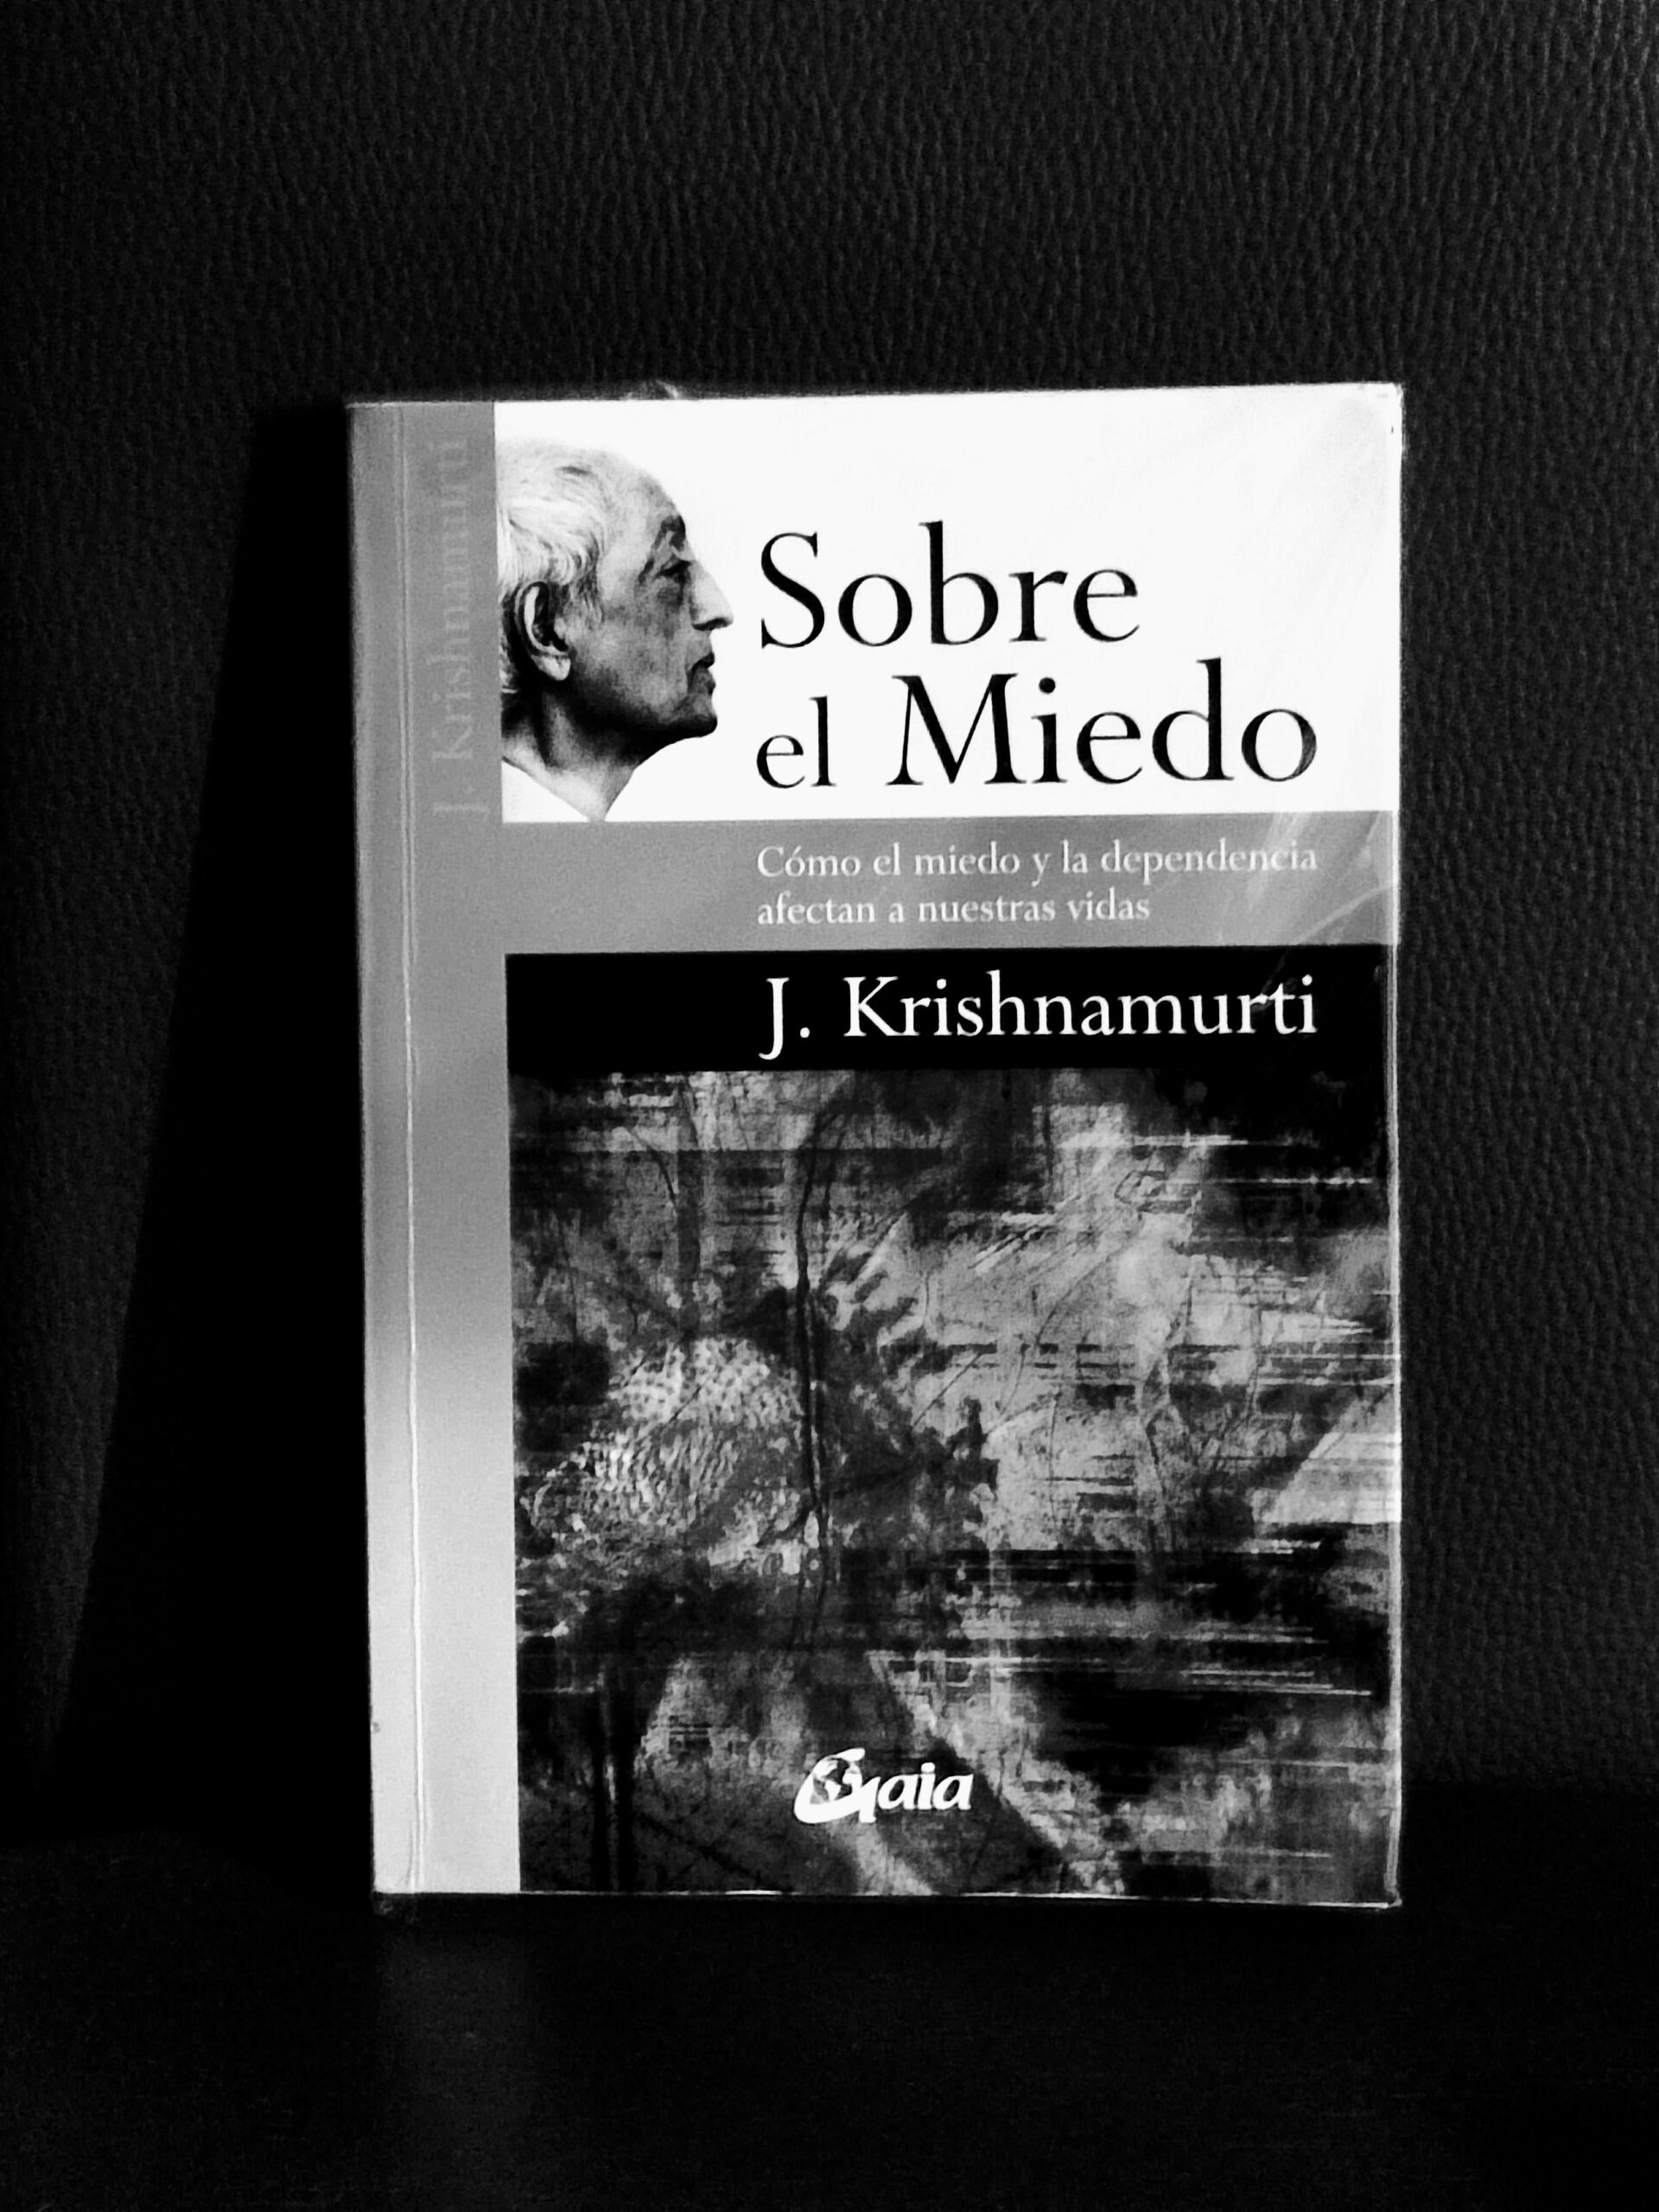 Critique de l’œuvre de Krishnamurti sur la peur.